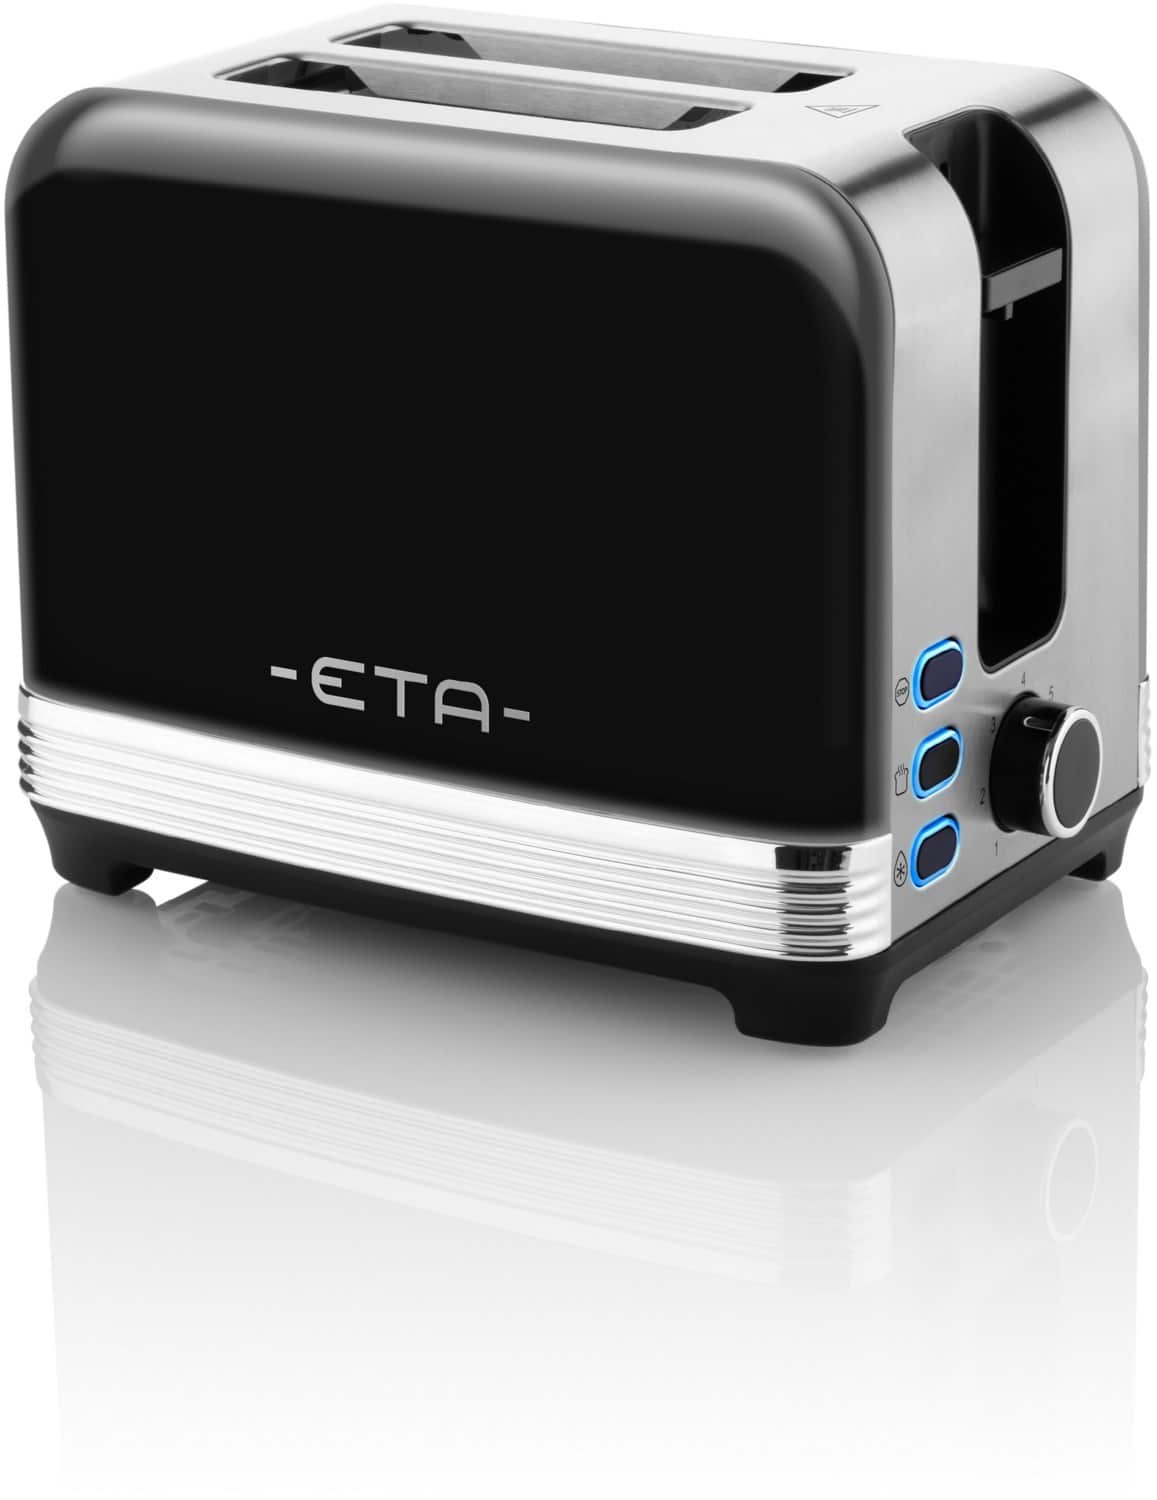 Eta Storio 9166-20 Kompakt-Toaster schwarz